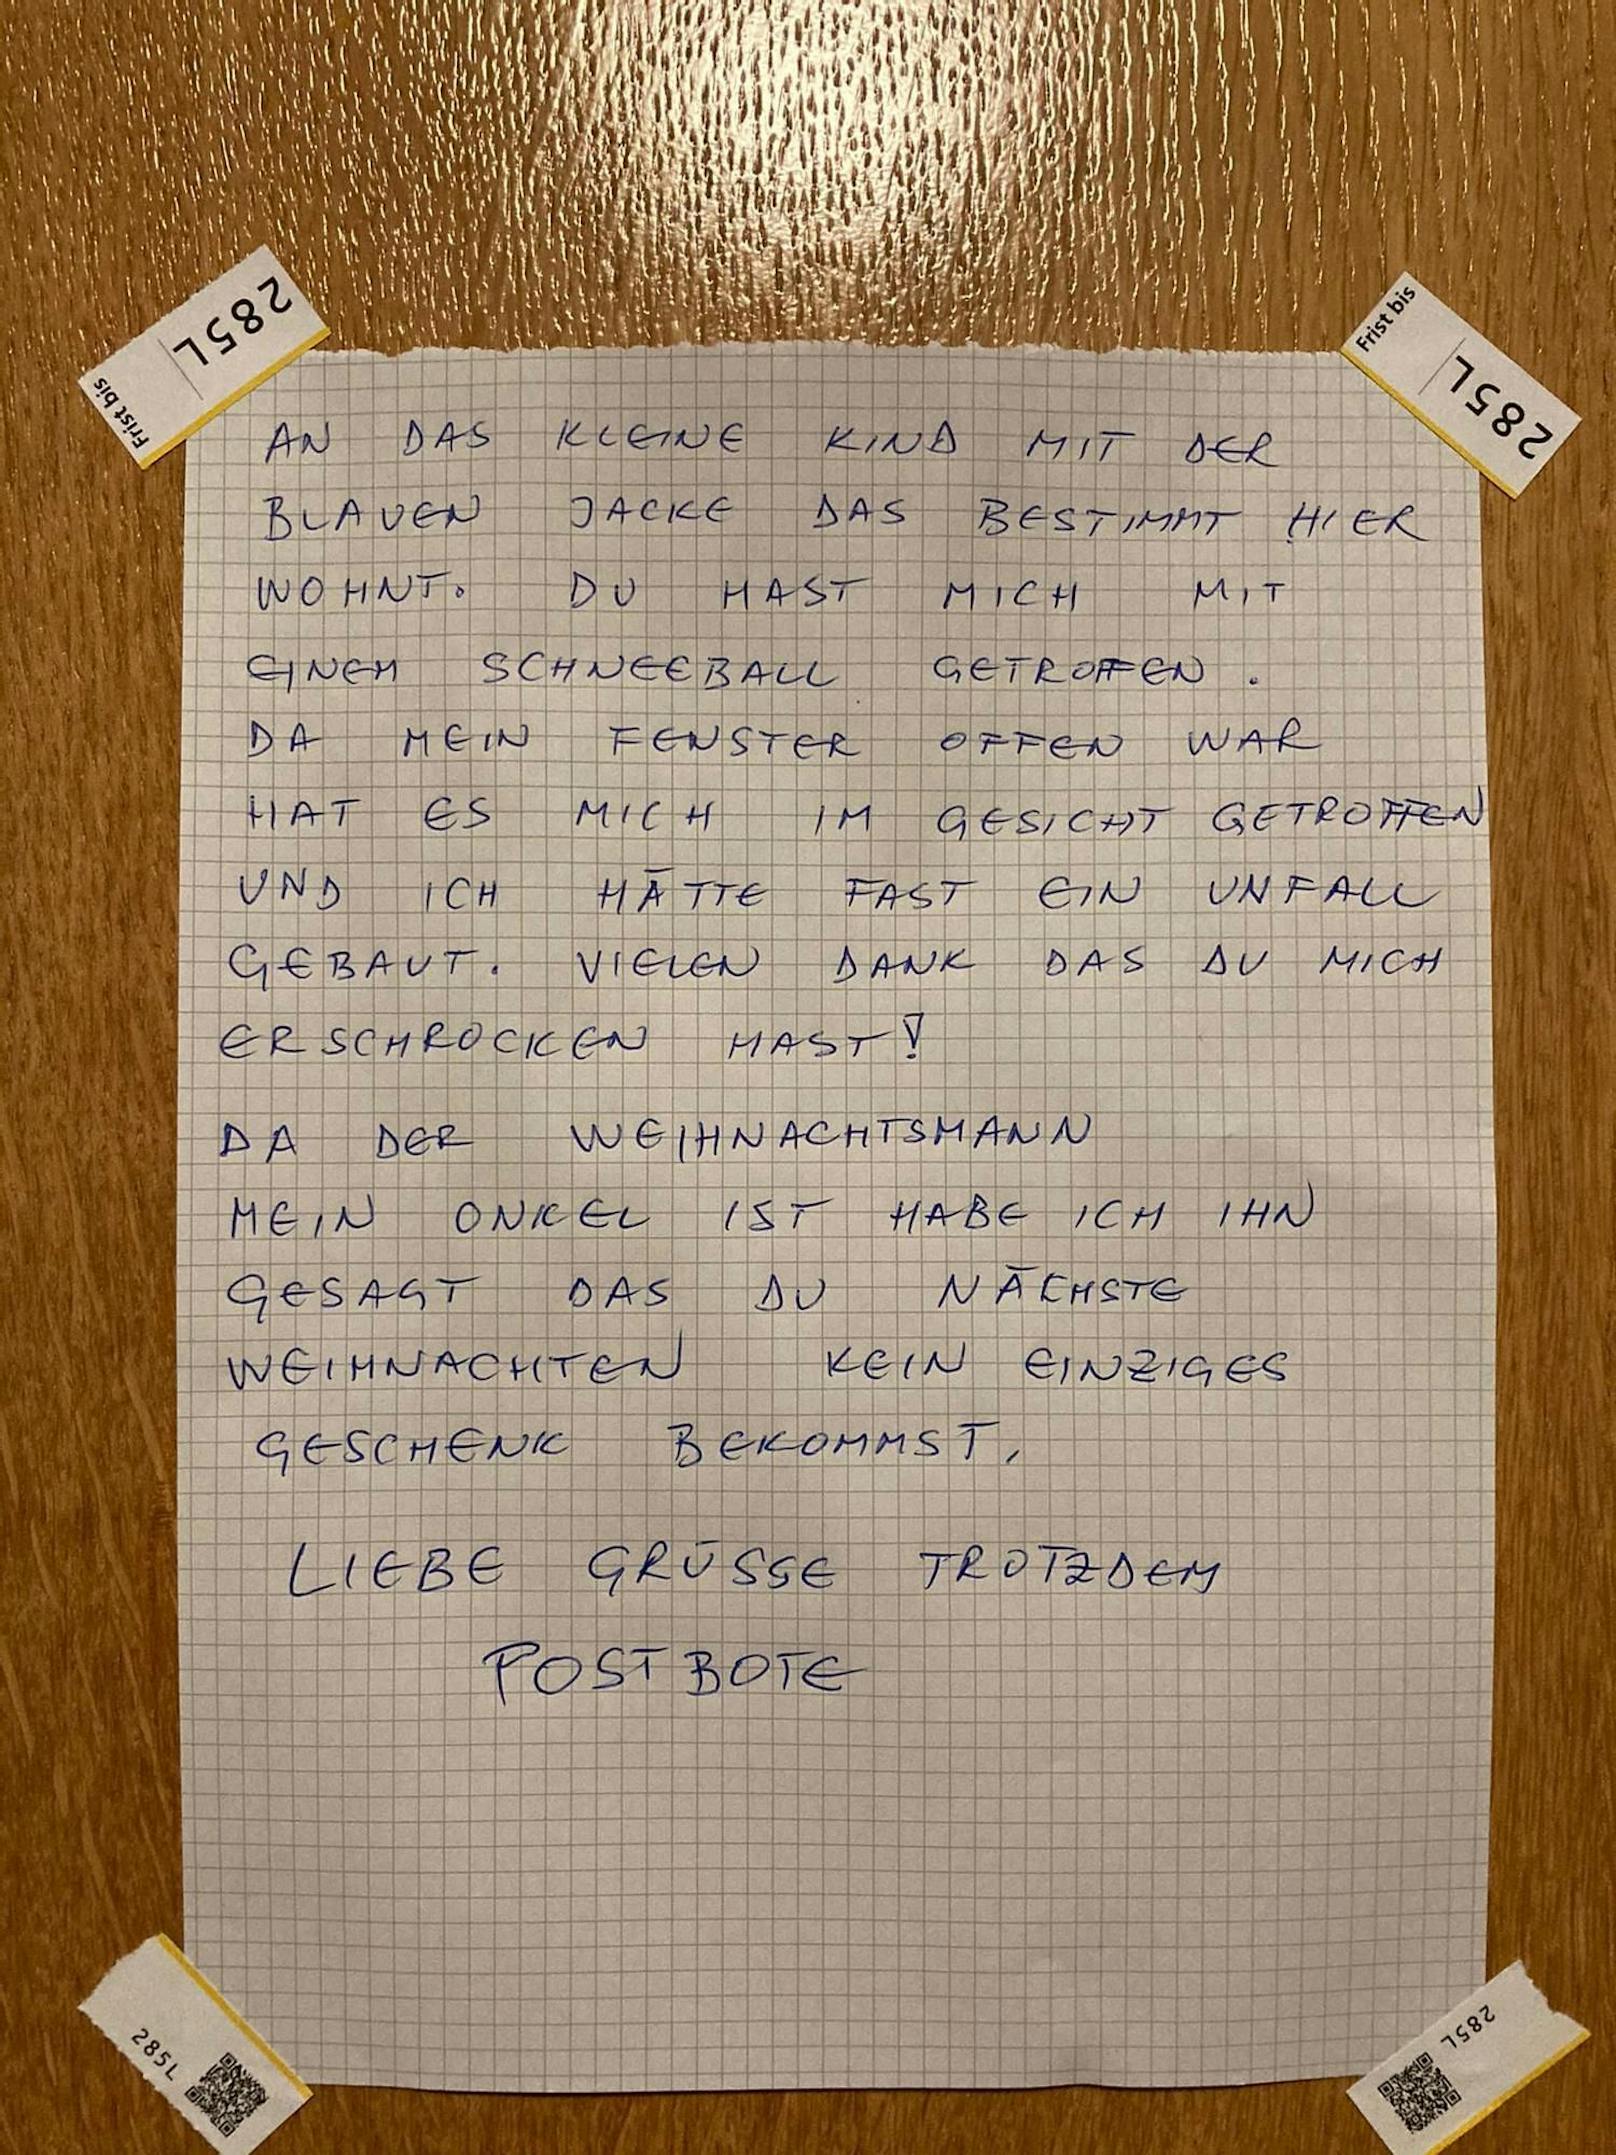 An der Hauseingangstür eines Mehrfamilienhauses in Zürich hing dieser Brief.